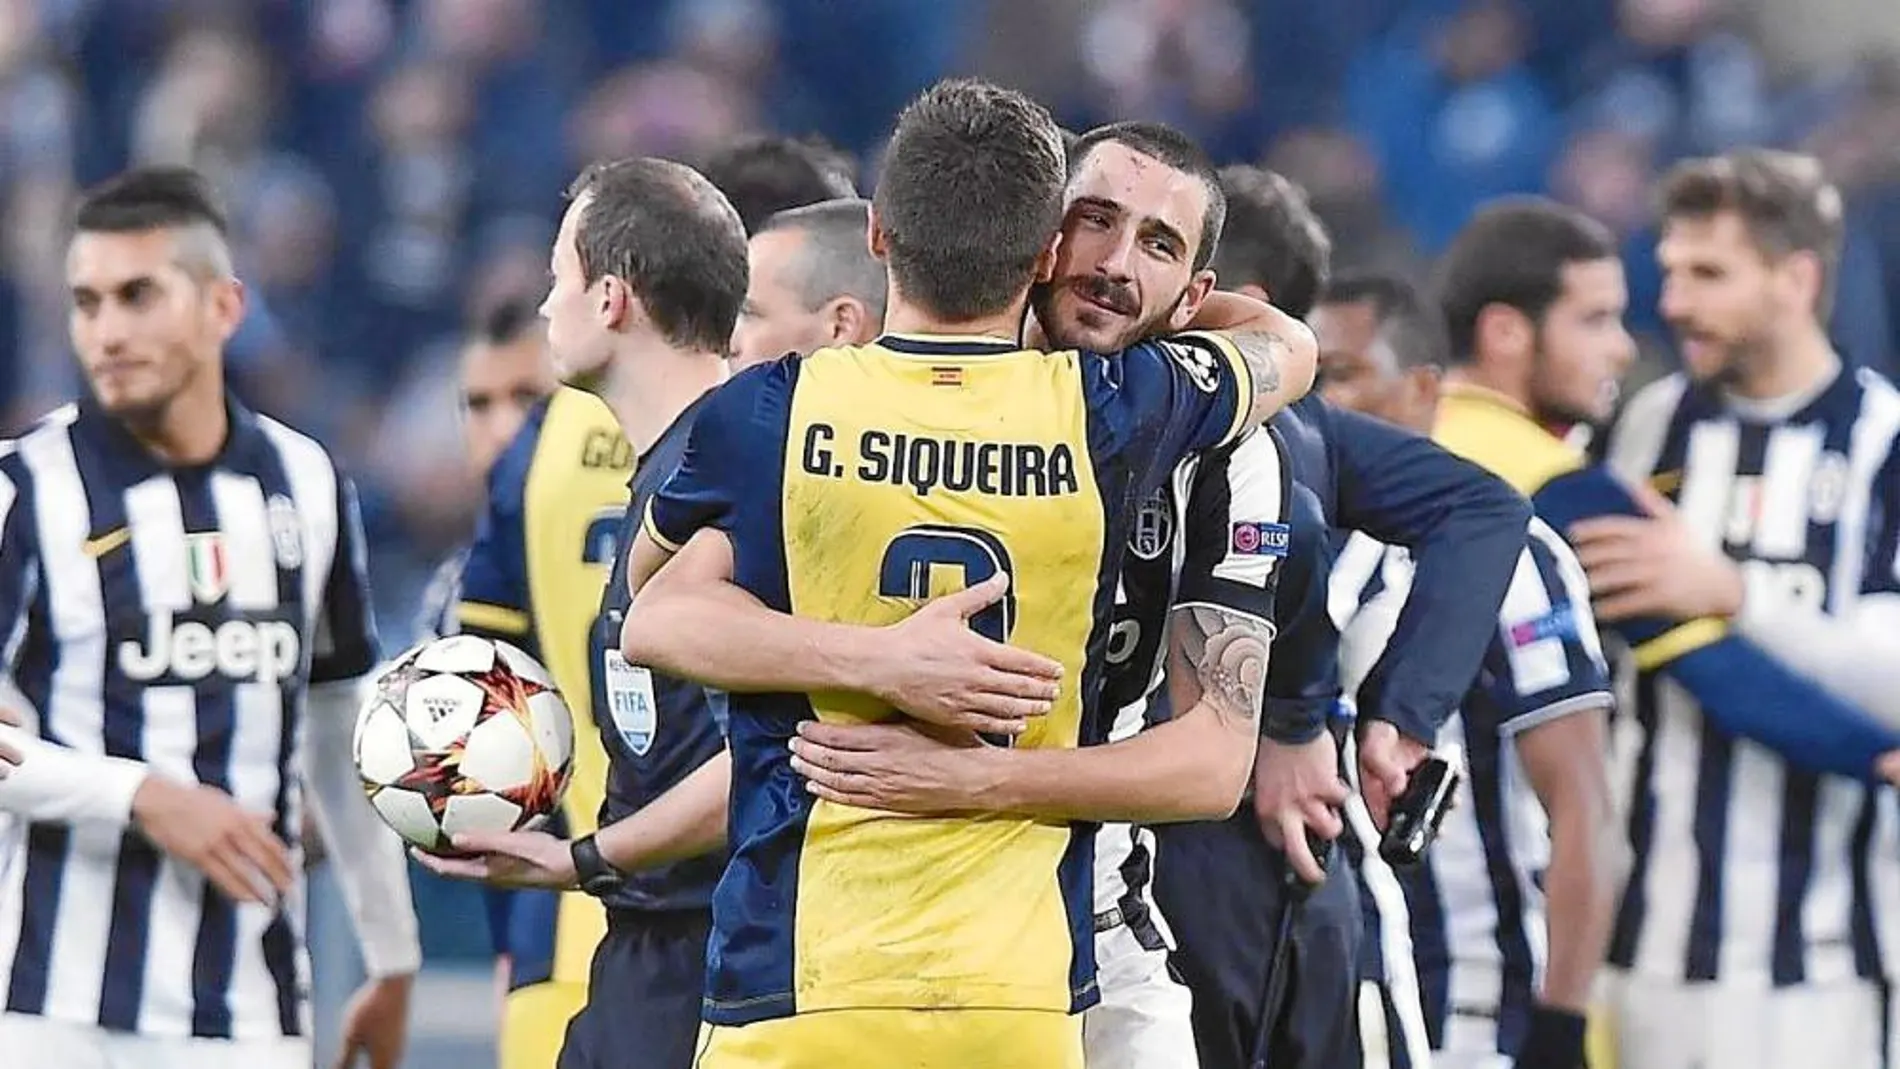 Siqueira y Bonucci se abrazan tras el partido. Atlético y Juve estaban clasificados